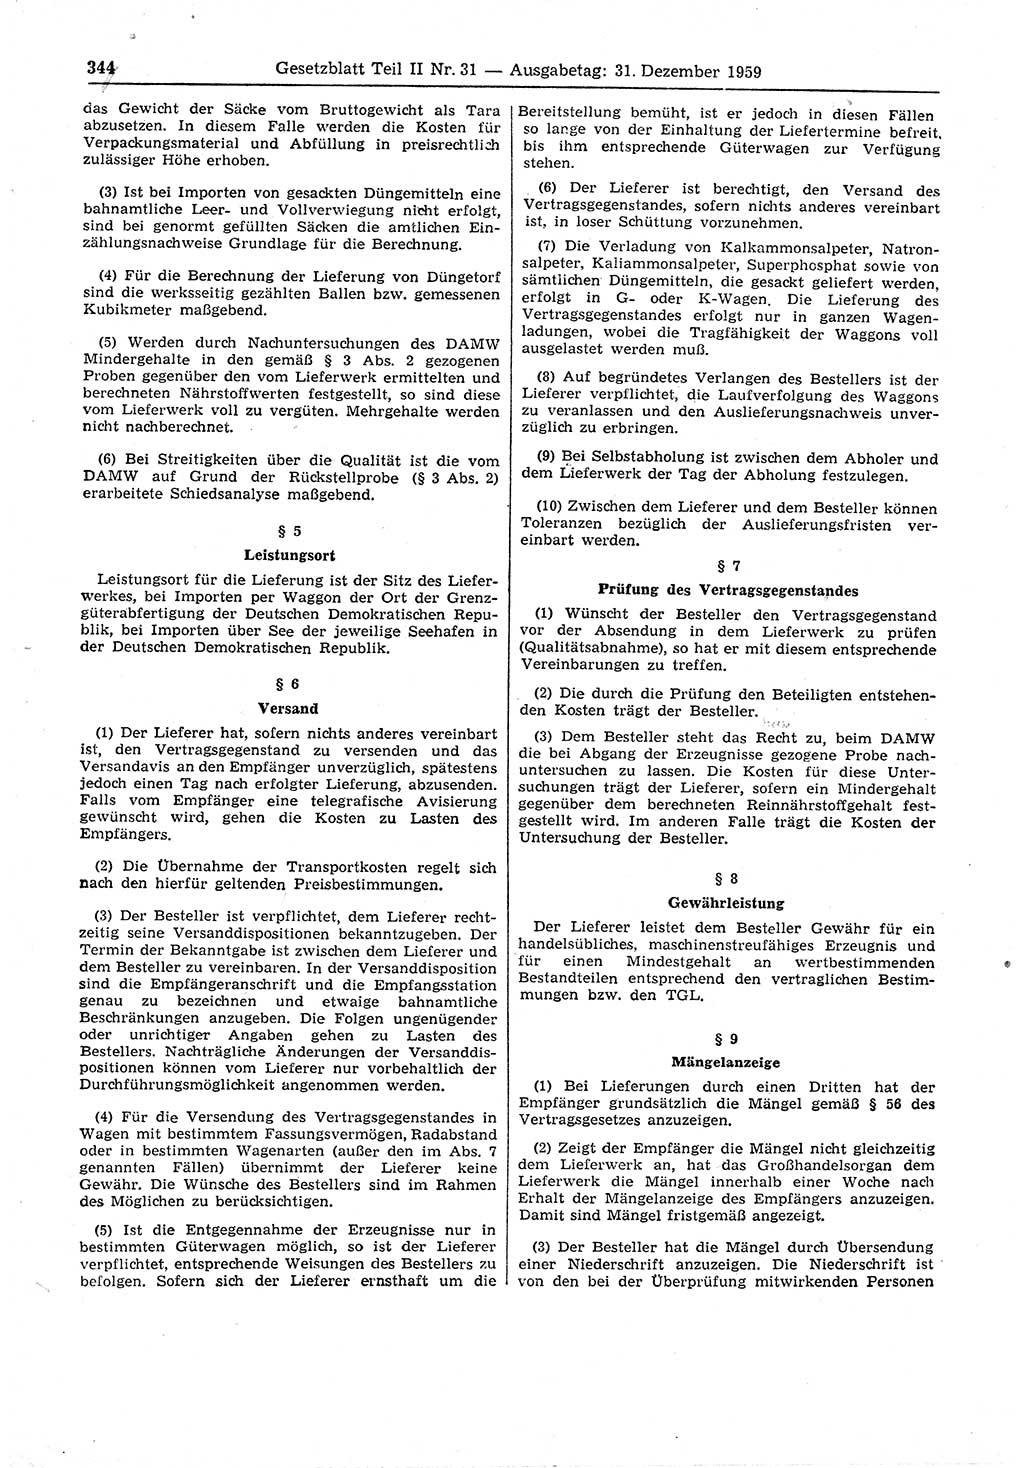 Gesetzblatt (GBl.) der Deutschen Demokratischen Republik (DDR) Teil ⅠⅠ 1959, Seite 344 (GBl. DDR ⅠⅠ 1959, S. 344)